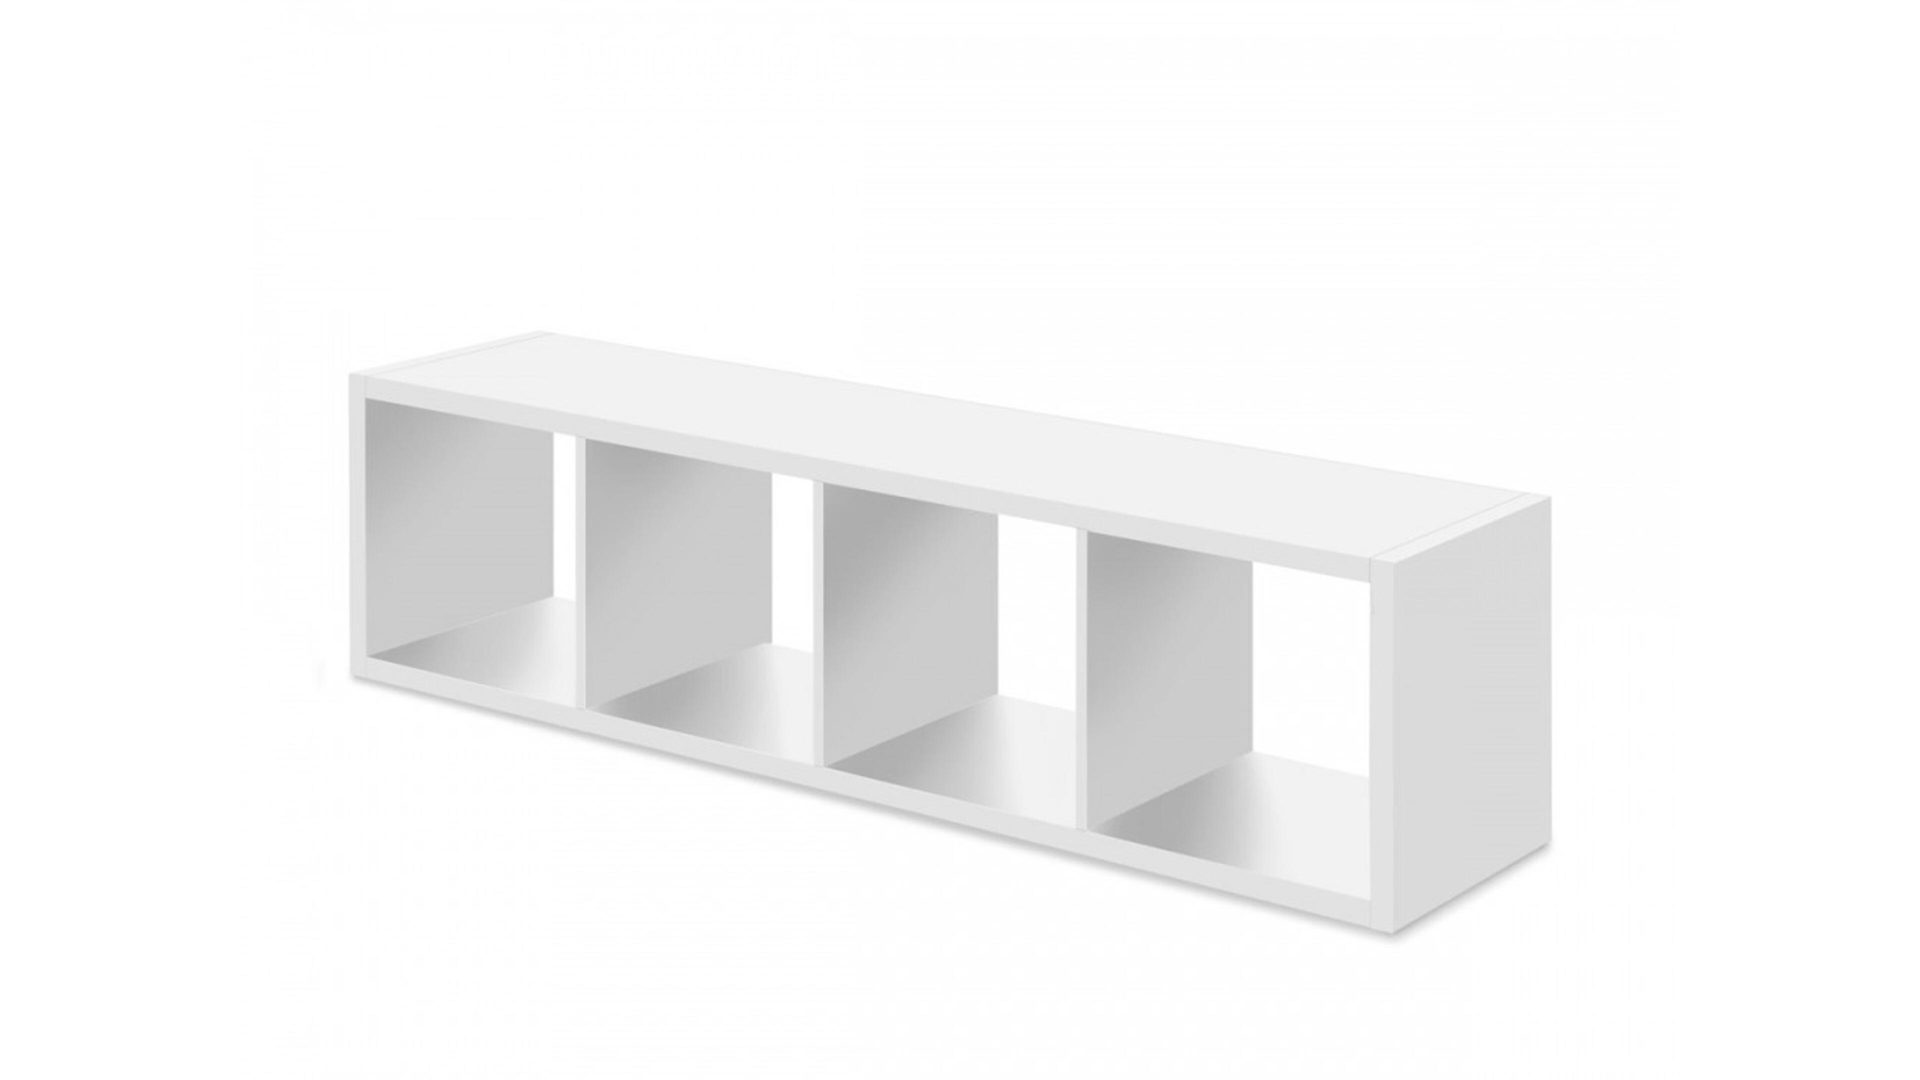 Raumteiler Bega consult aus Holz in Weiß Raumteiler auch als Bücherregal einsetzbar mattweiße Kunststoffoberflächen - vier  Fächer, ca. 41 x 147 x 38 cm